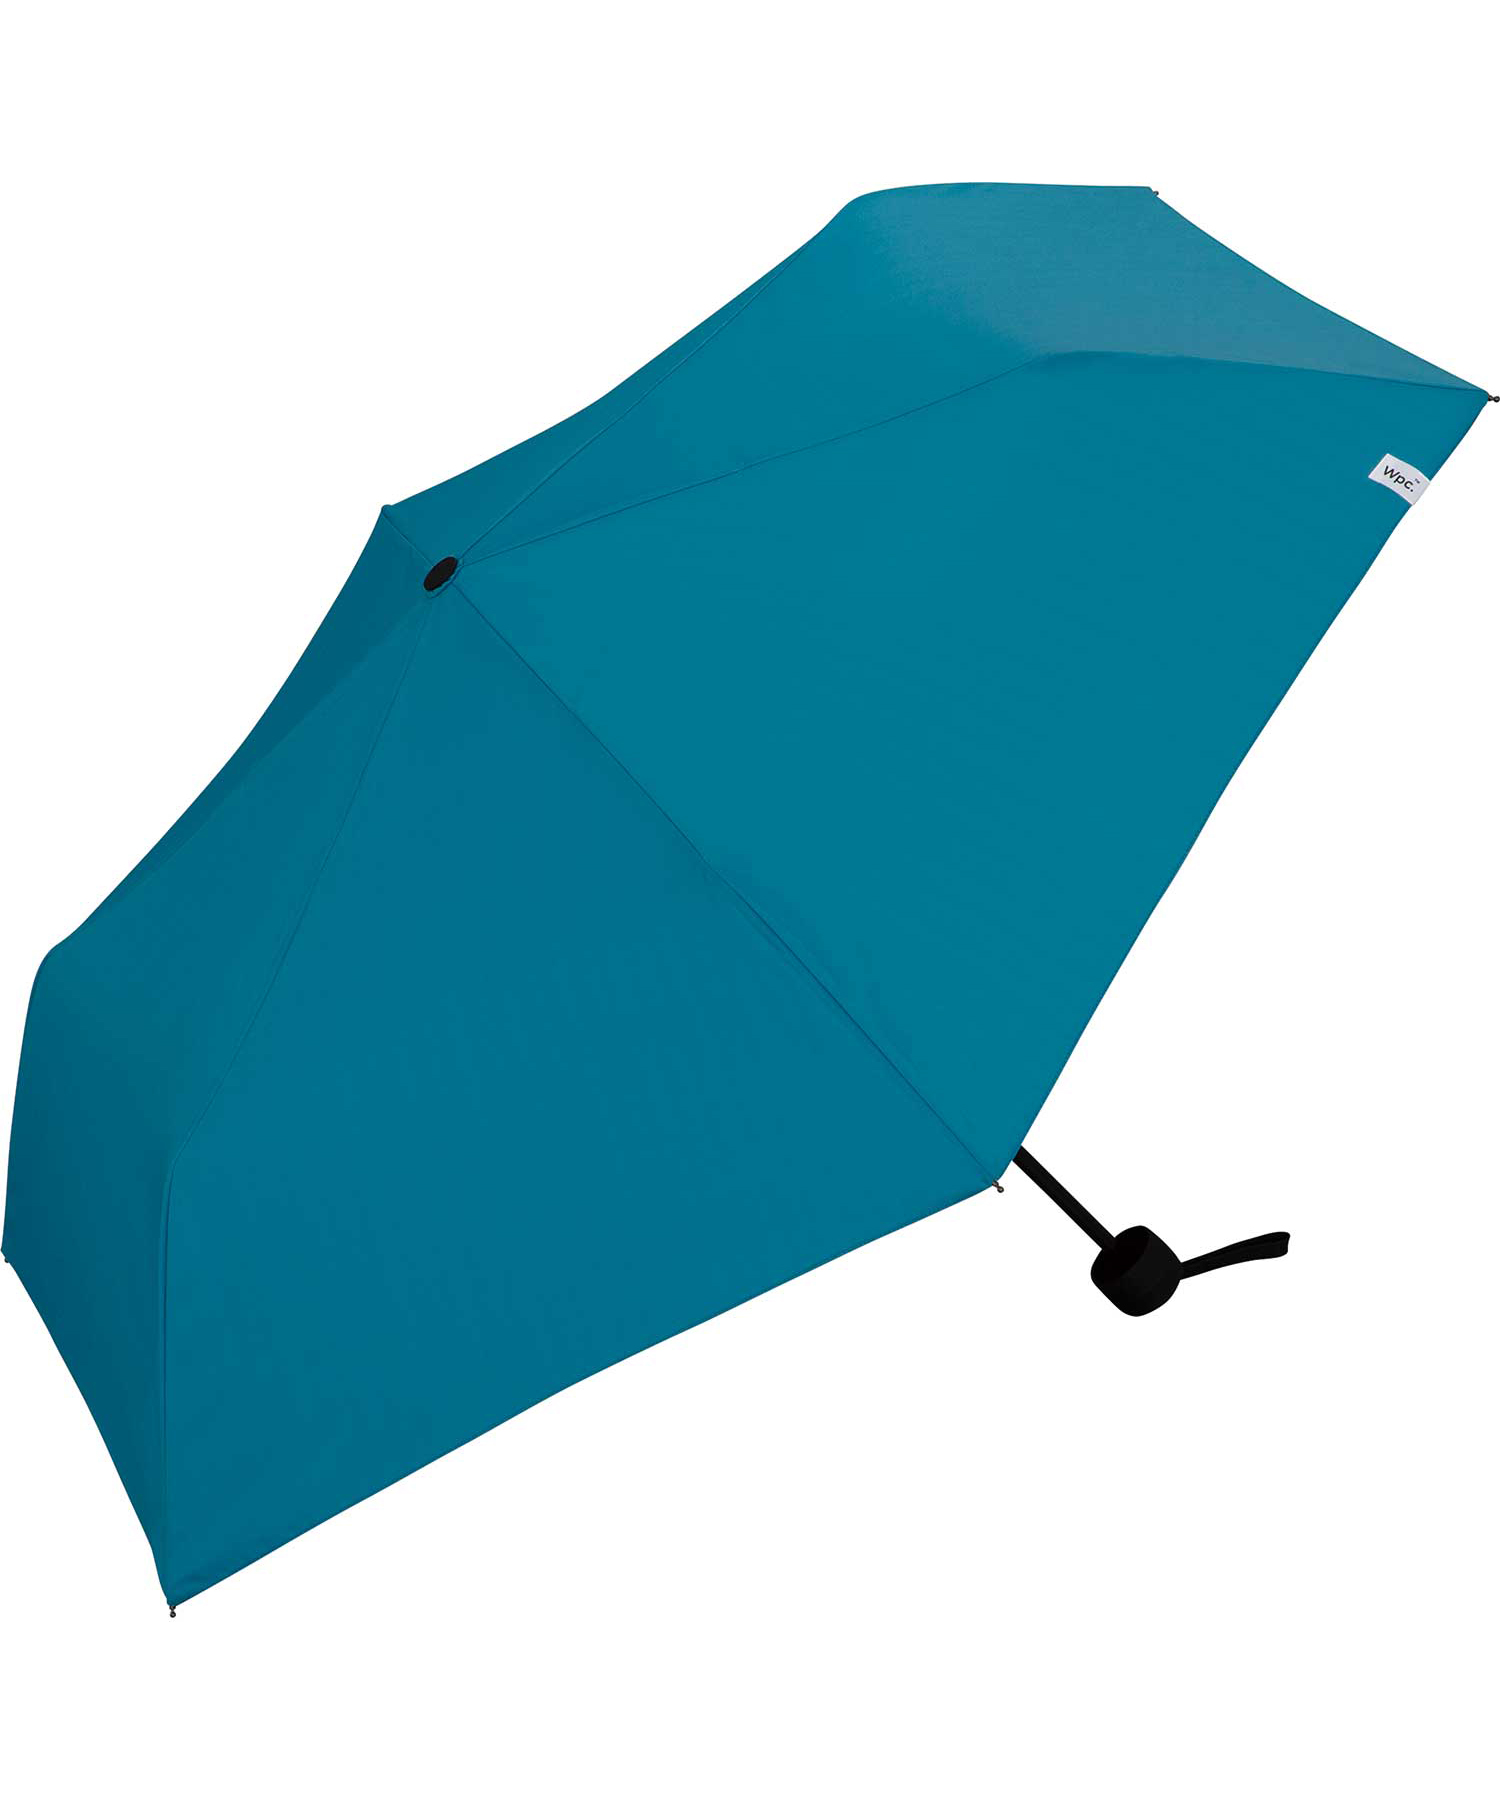 【送料関税無料】 折りたたみ傘 遮光パラソルユニセックス2 970円